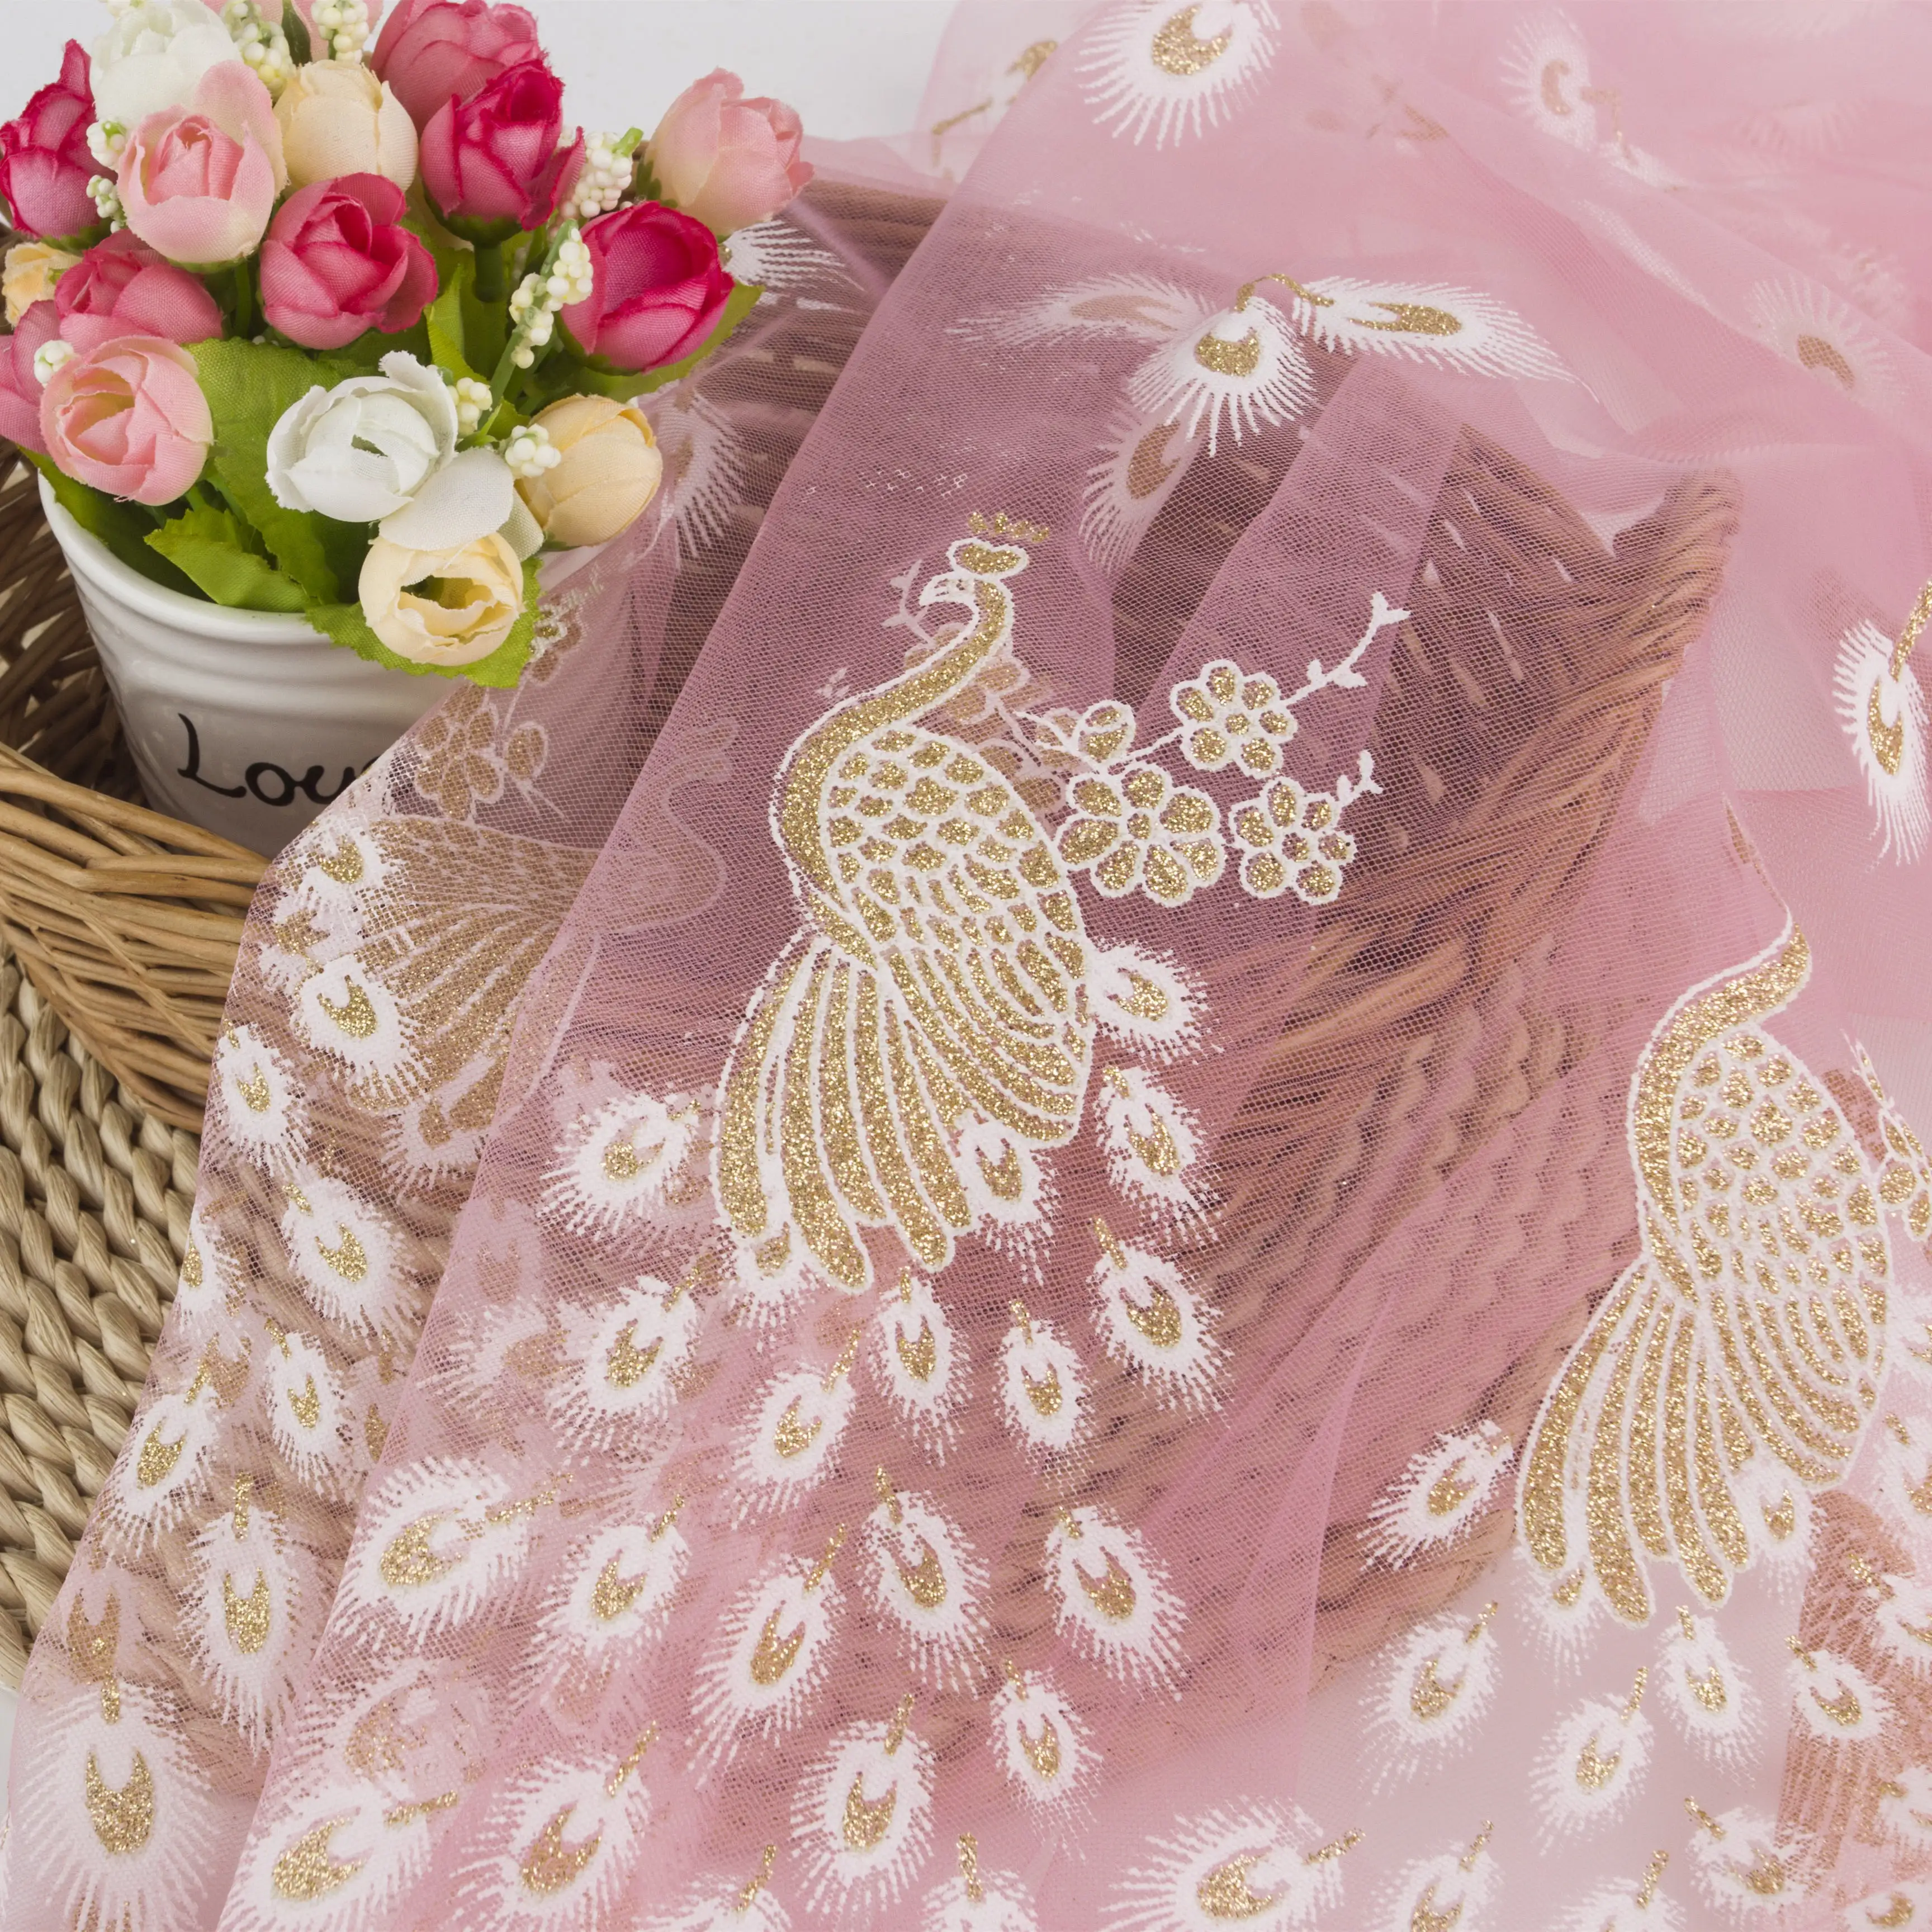 गुलाबी tulle नई डिजाइन चमकदार मोर tulle कपड़े सोने की चमक के लिए जाल कपड़े रानी पोशाक